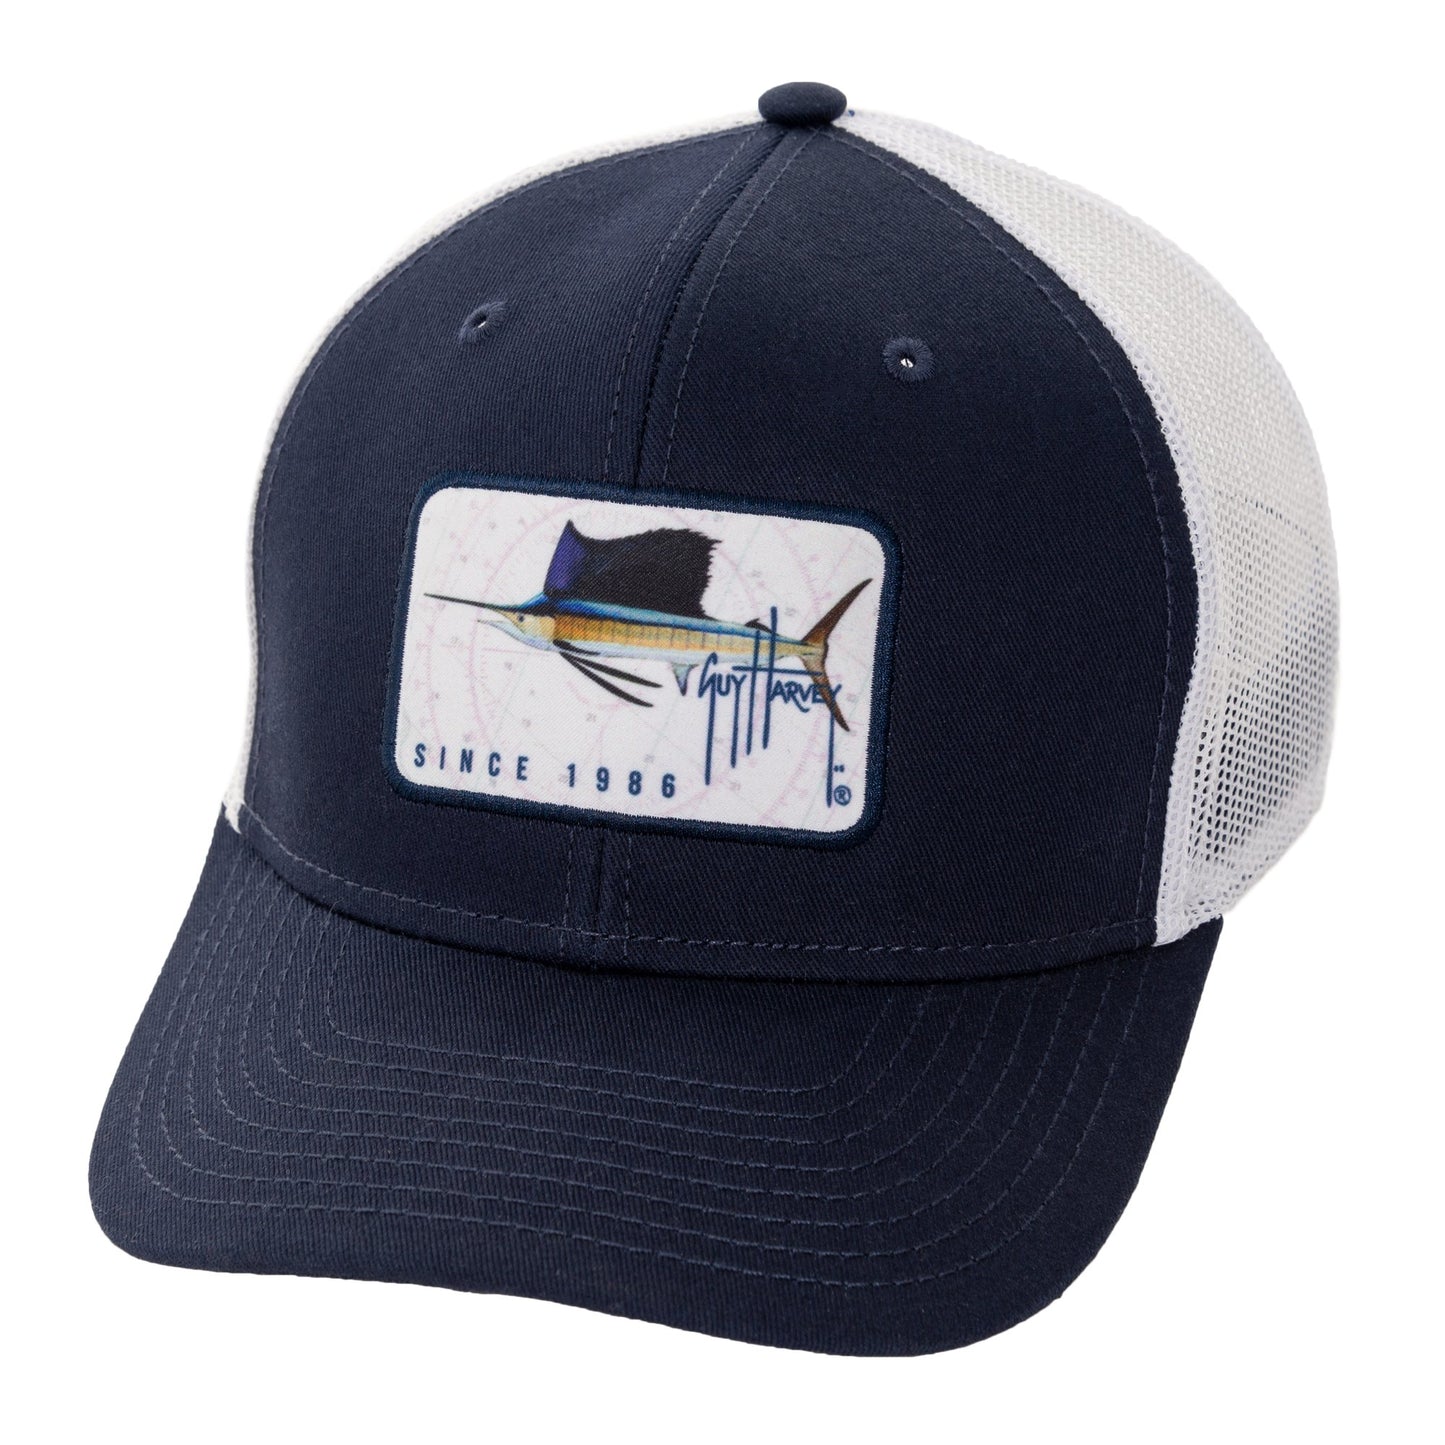 Guy Harvey Men's Sailfish Patch Trucker Hat, Navy, OSFM